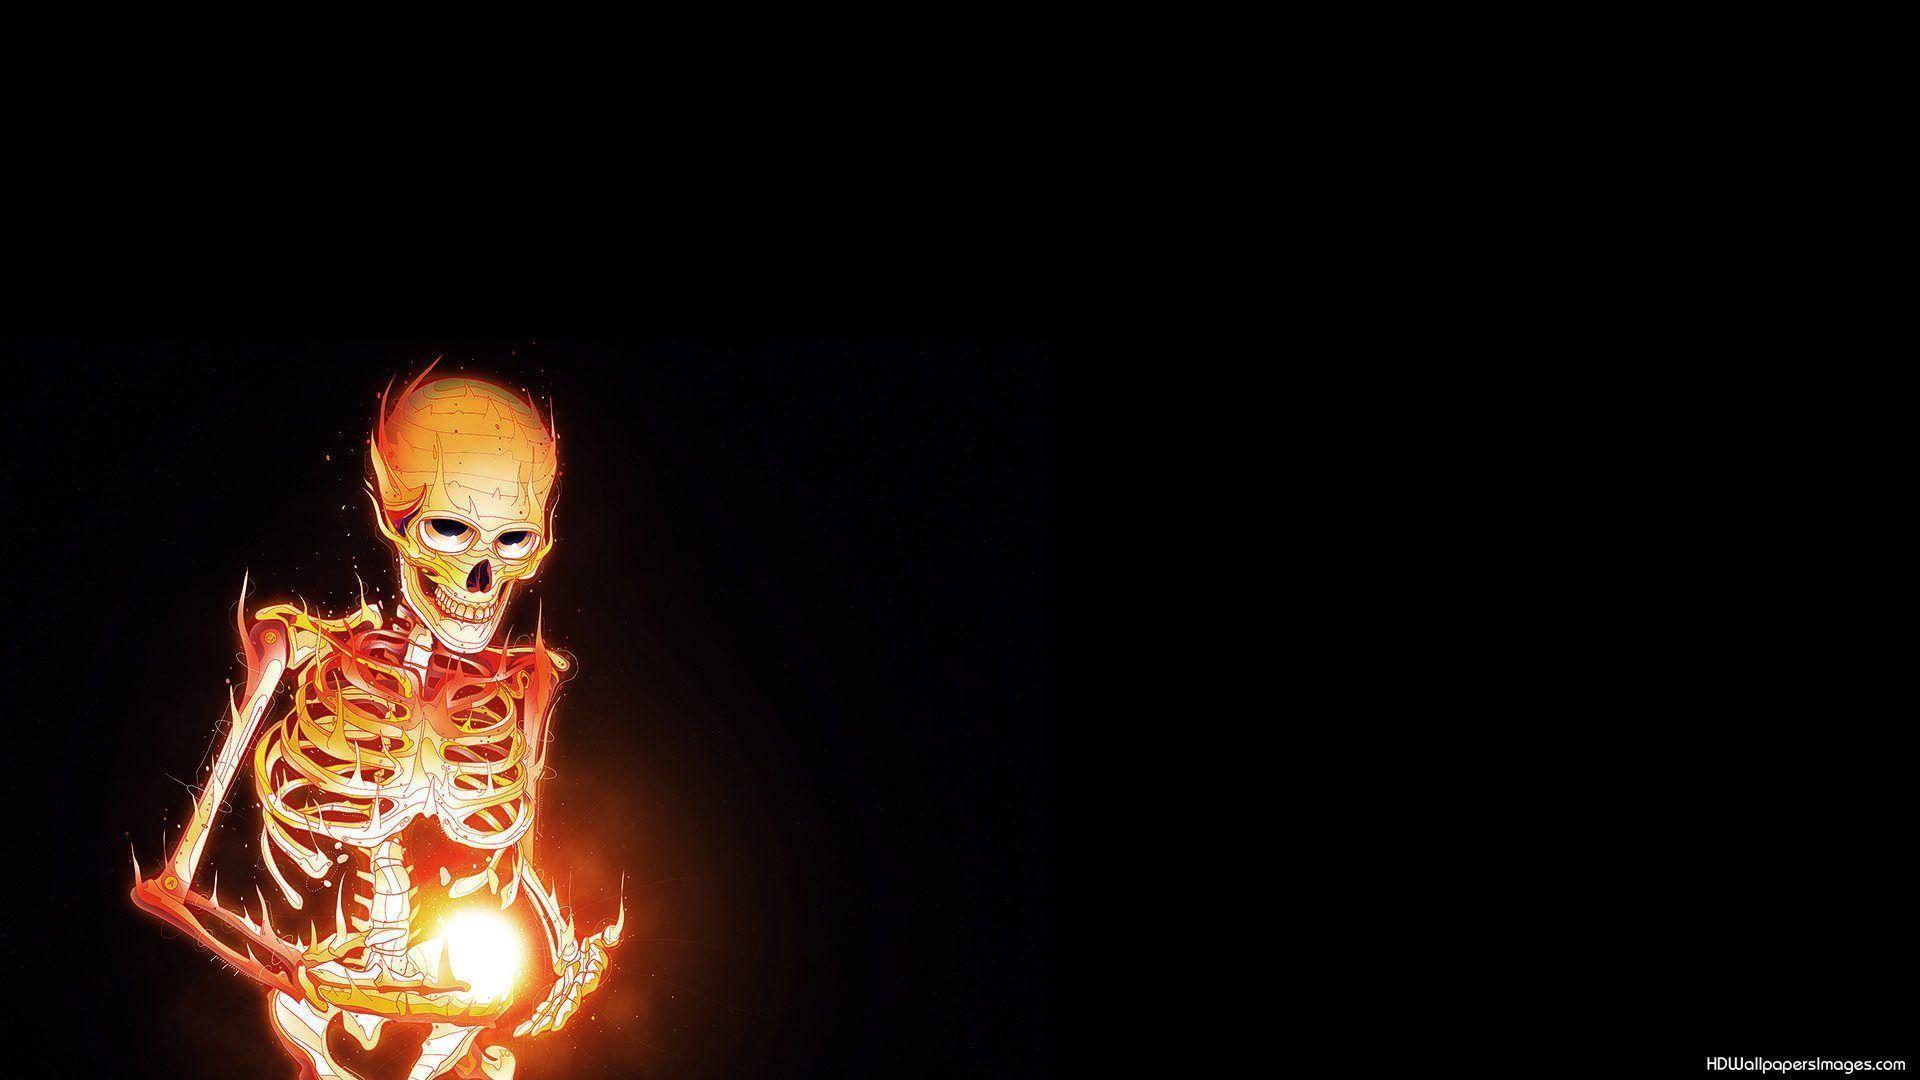 Dark Burning Skeleton Wallpaper. HD Wallpaper Image